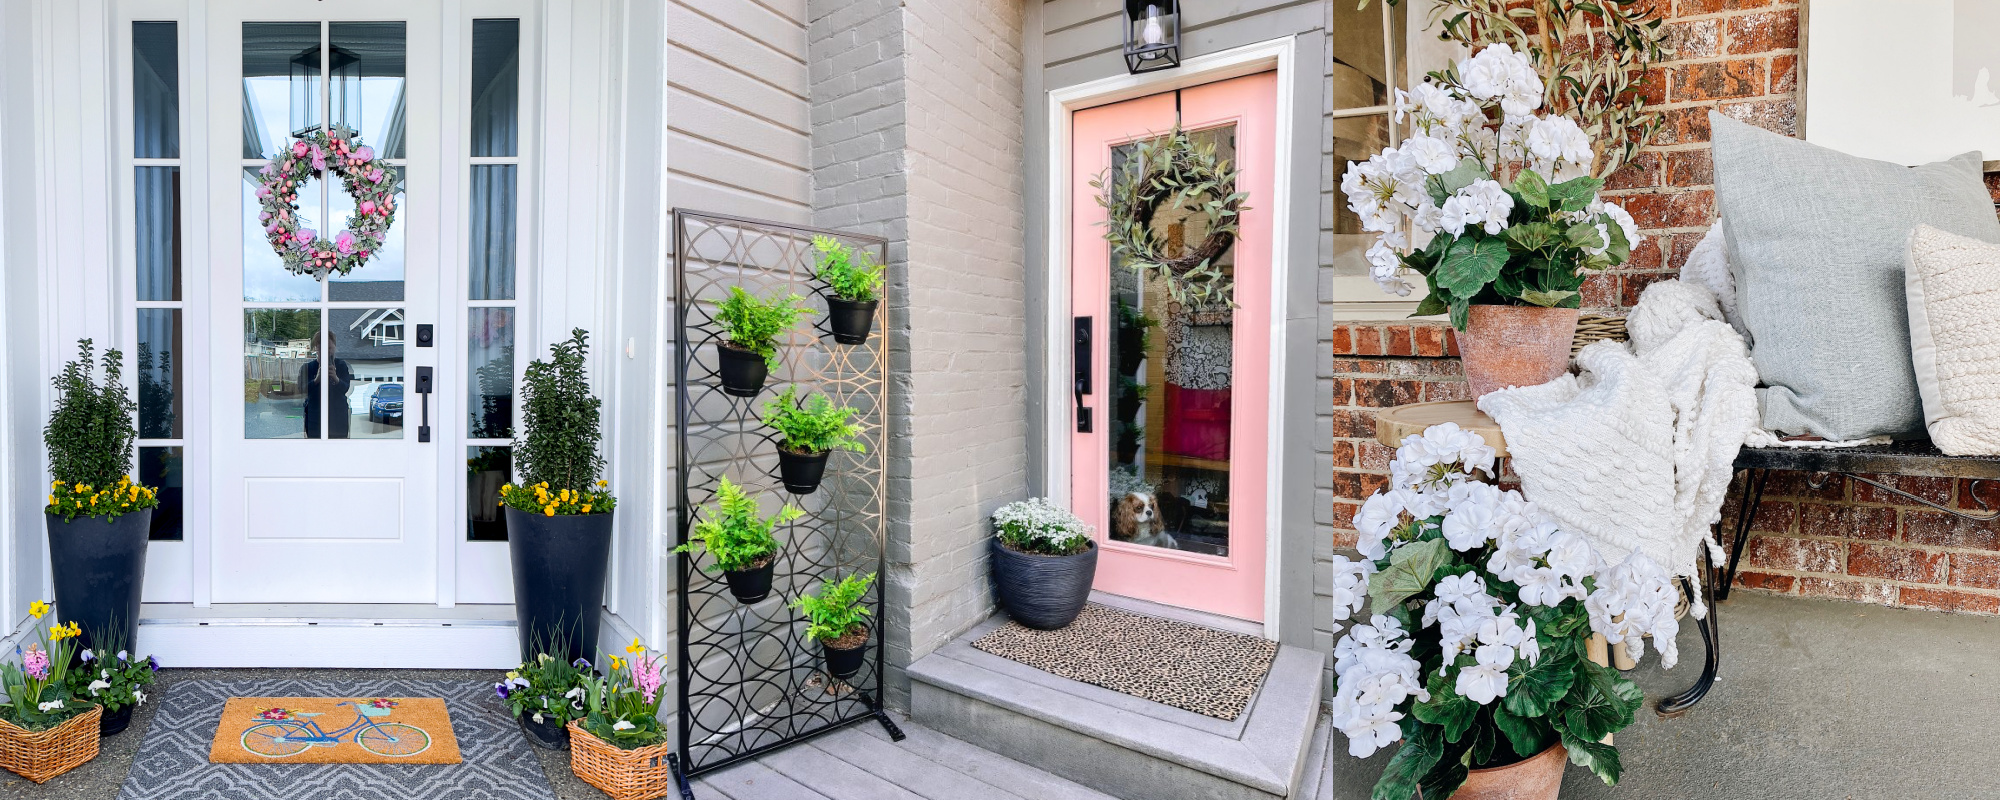 DIY Spring Wreath Ideas  Spring Porch Decor Inspiration